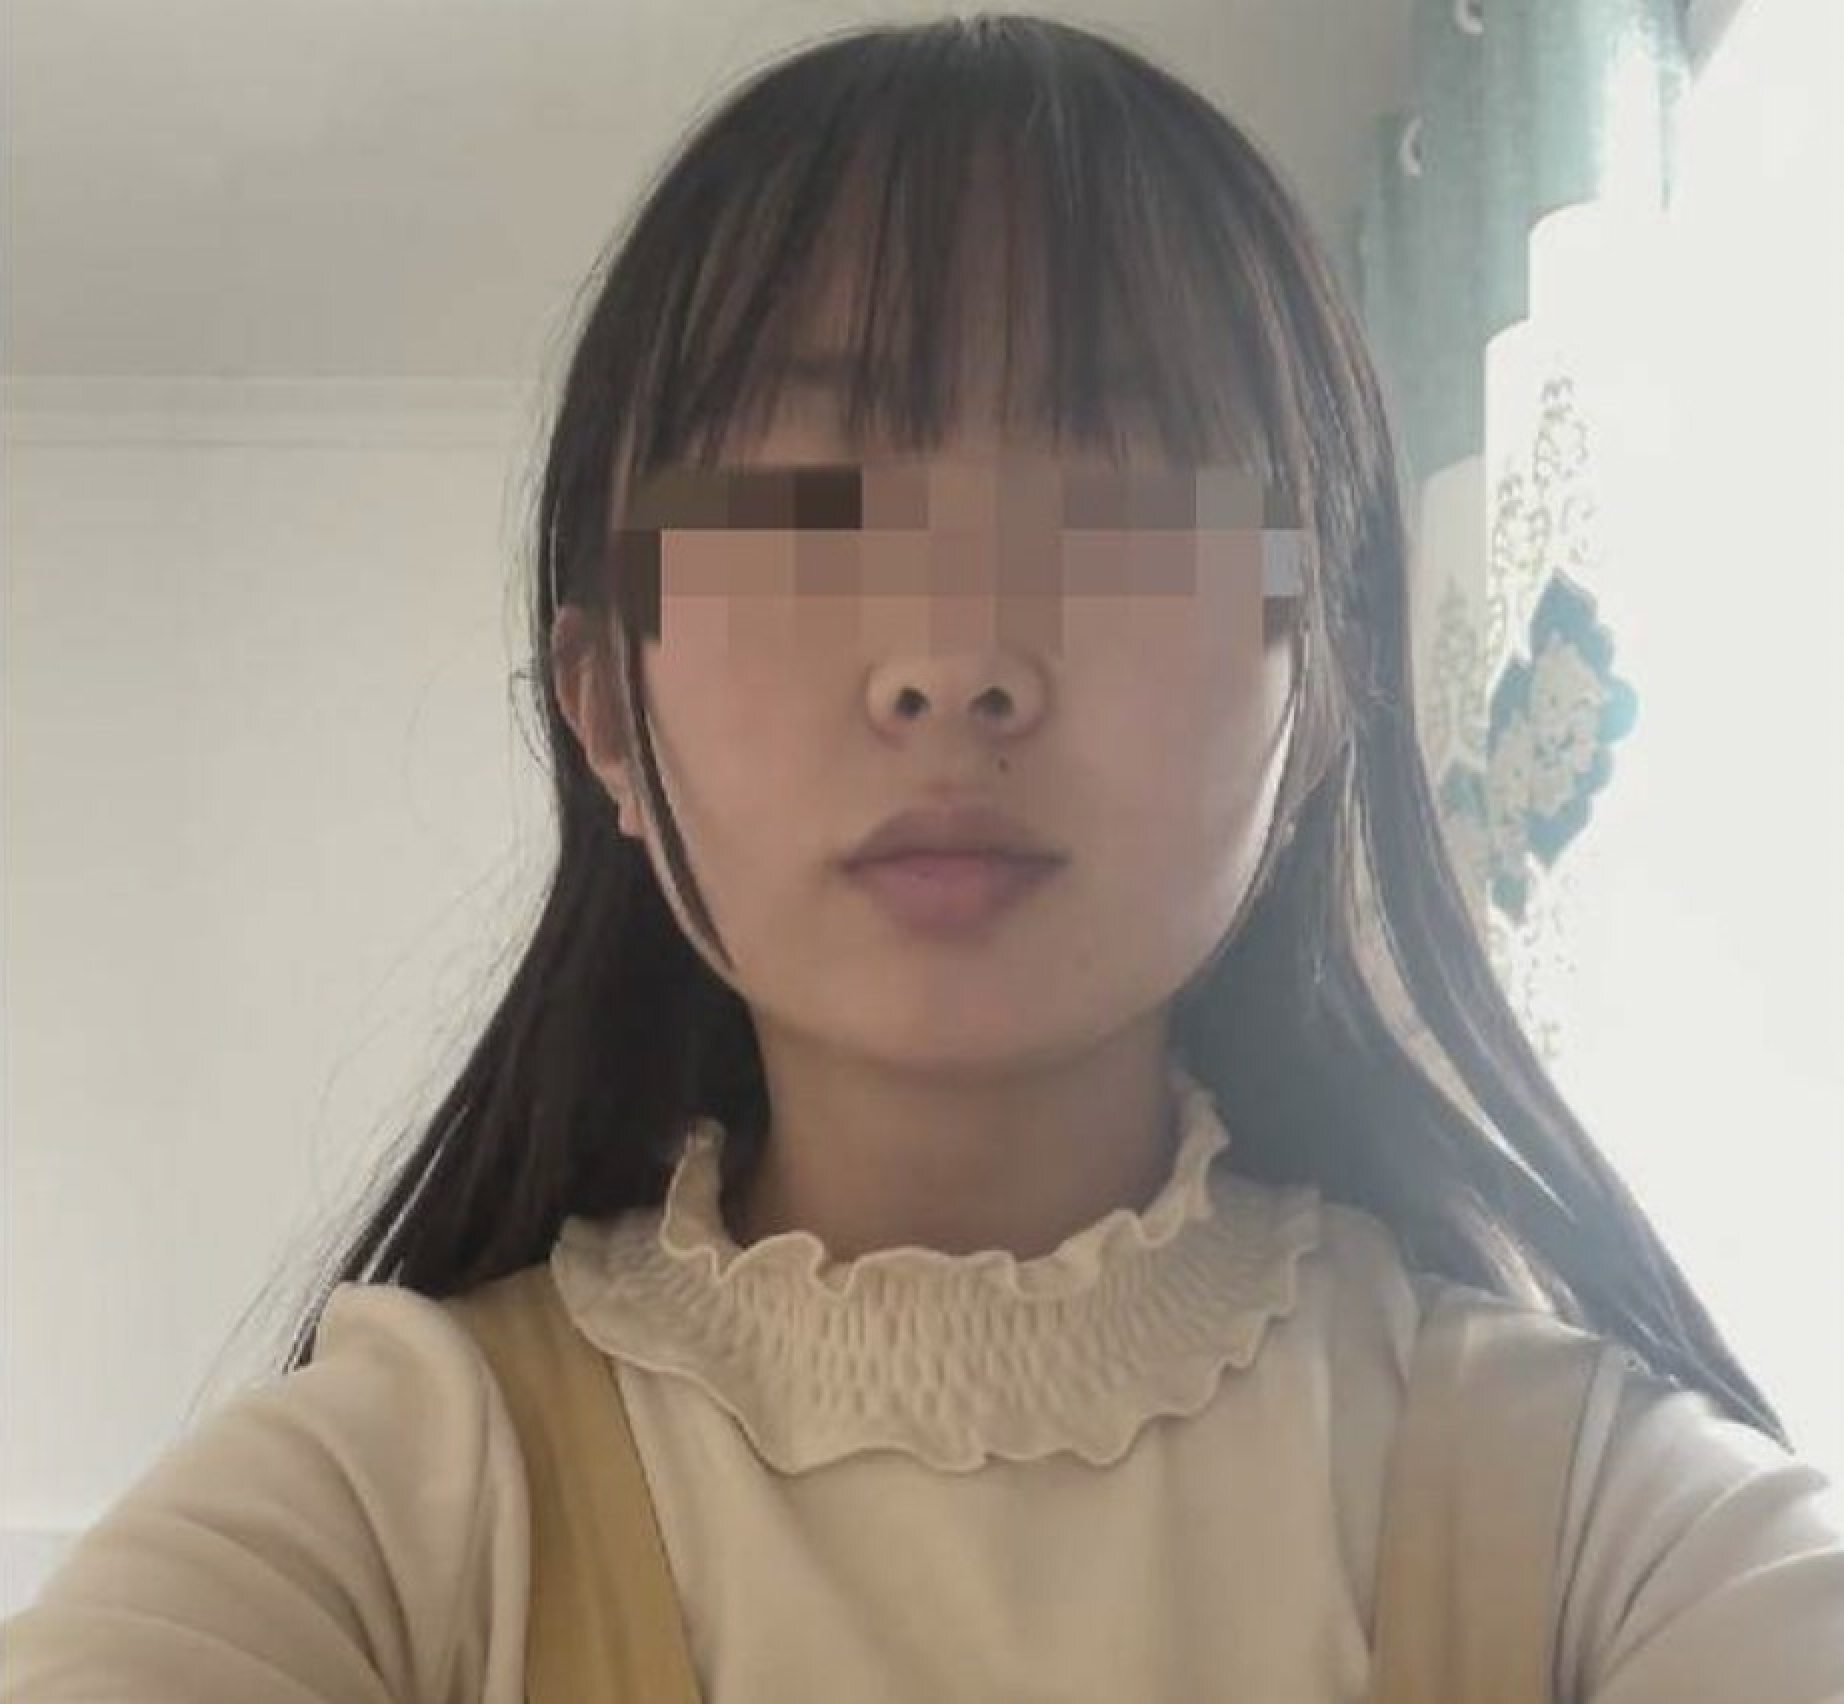 В Китае мужчина не смог выплатить выкуп невесты, поэтому его девушку  выкрали из дома